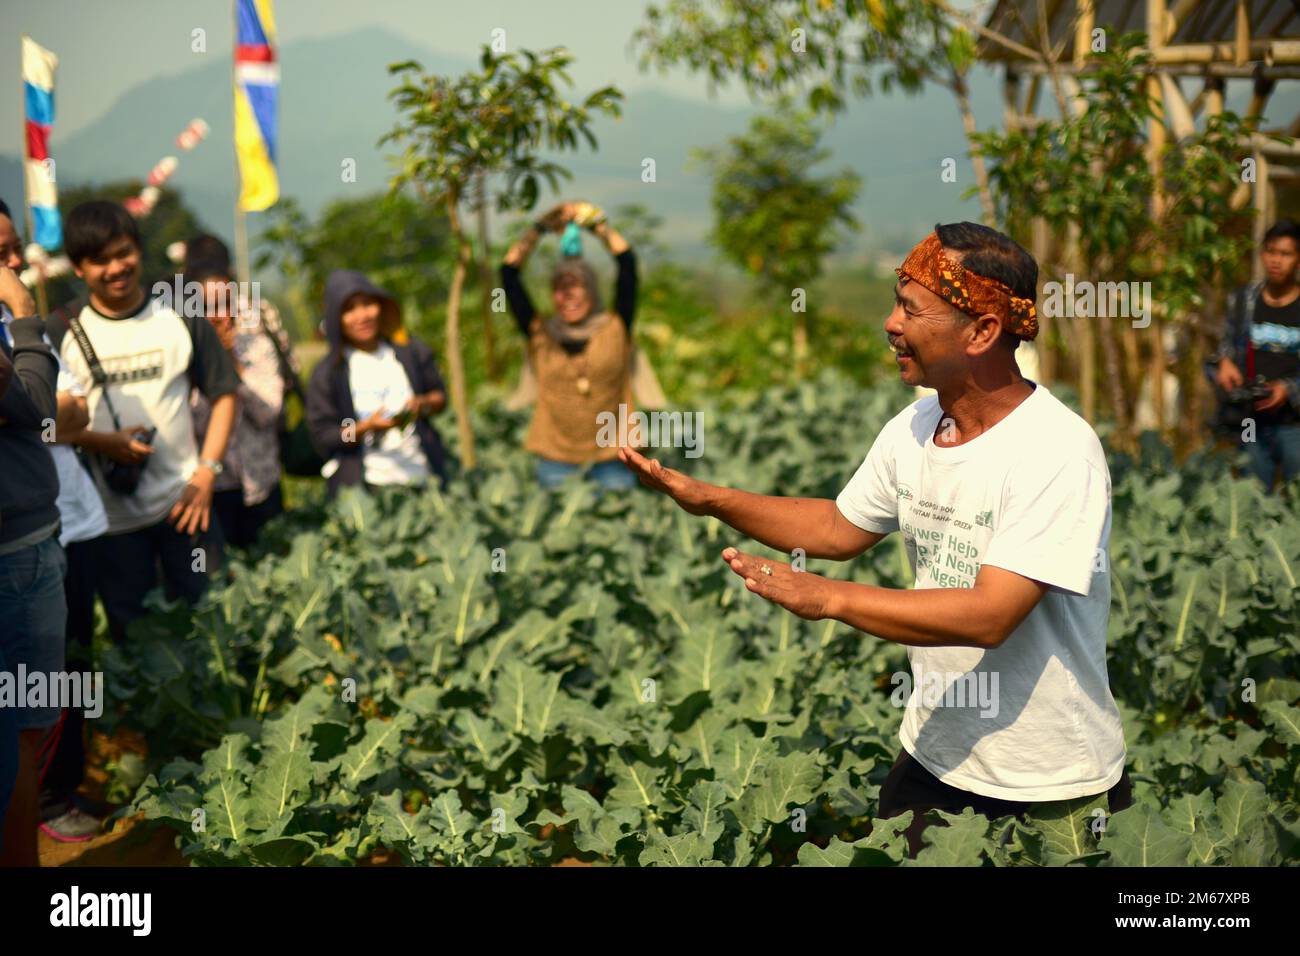 Ein Landwirt, der den Besuchern auf einem Feld mit ökologischem Gemüse während des "Festival Sarongge", einer landwirtschaftlichen Thanksgiving-Veranstaltung, die zeitgleich mit der Feier des Unabhängigkeitstages Indonesiens stattfindet, der jedes Jahr am 17. August in Ciputri, Pacet, Cianjur, West Java begangen wird, eine Erklärung über den ökologischen Landbau gibt, Indonesien. Stockfoto